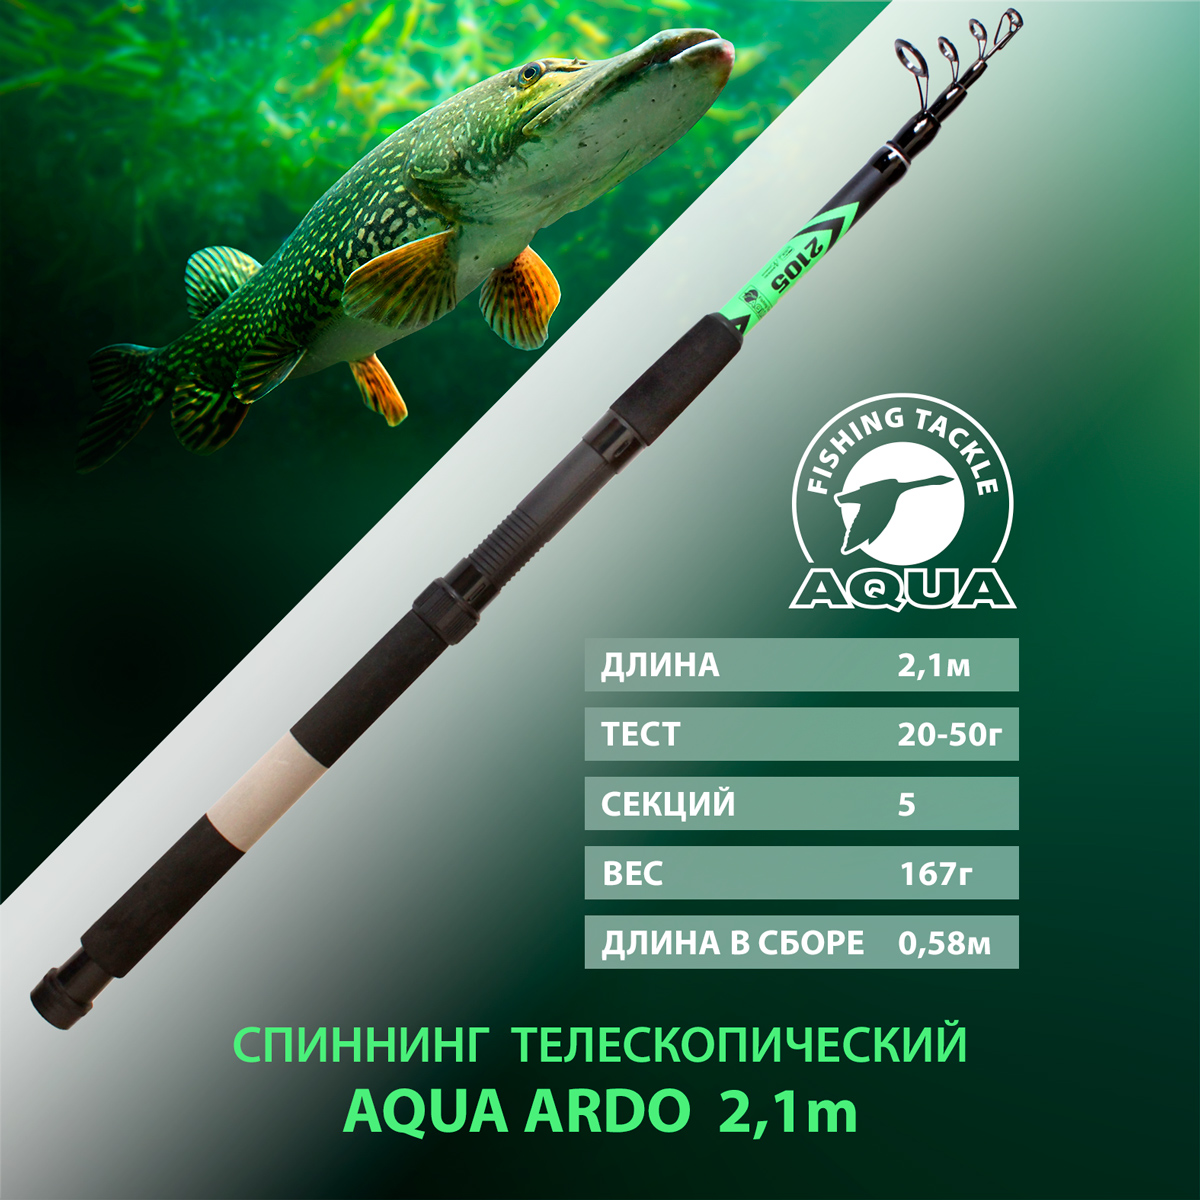 Спиннинг телескопический для рыбалки AQUA ARDO